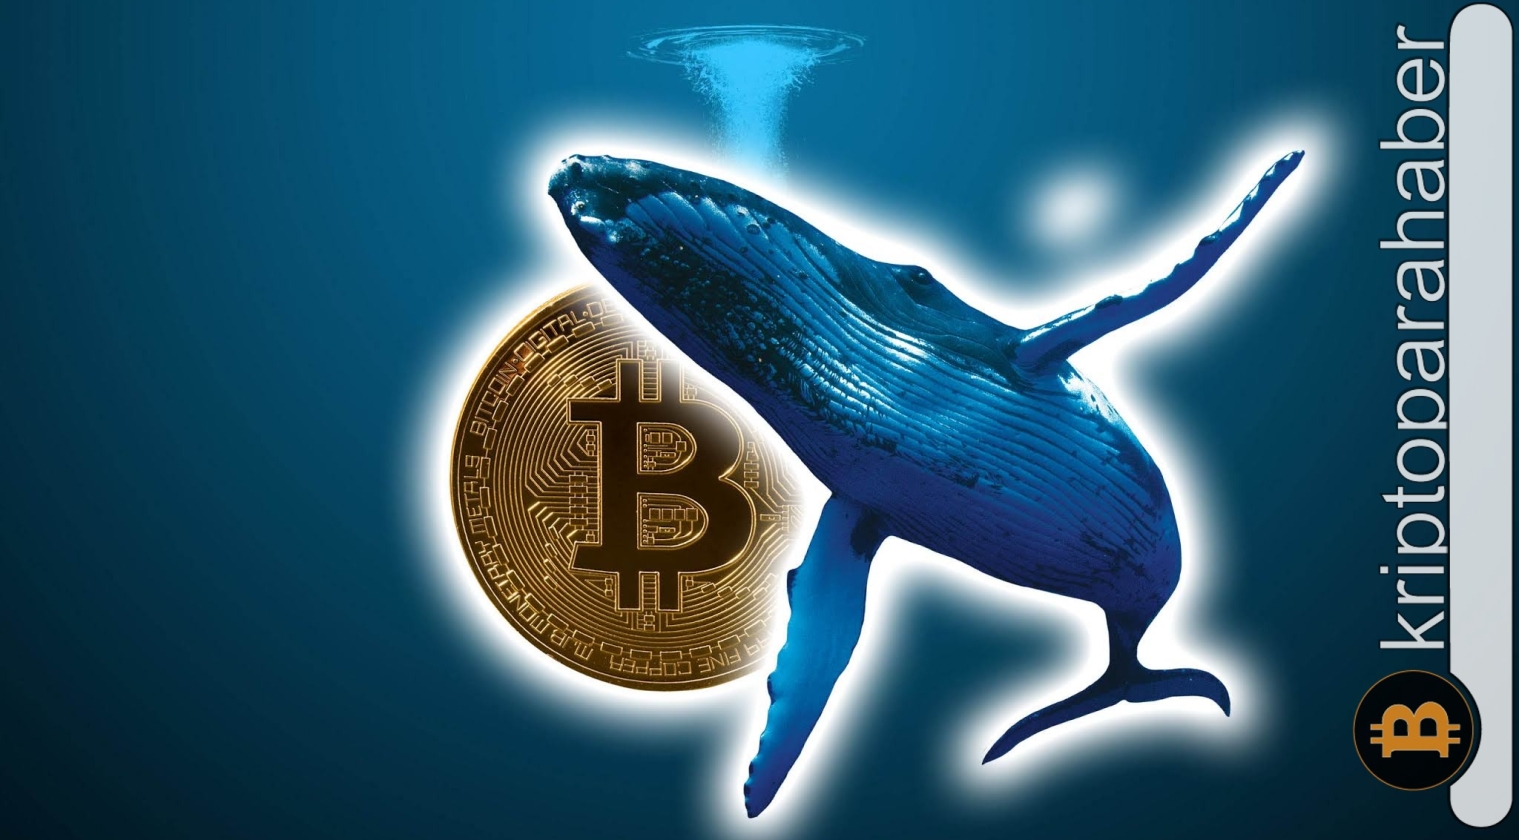 Bitcoin yükseliş beklentileri artarken balinalar hareketleniyor! Sebebi ne?